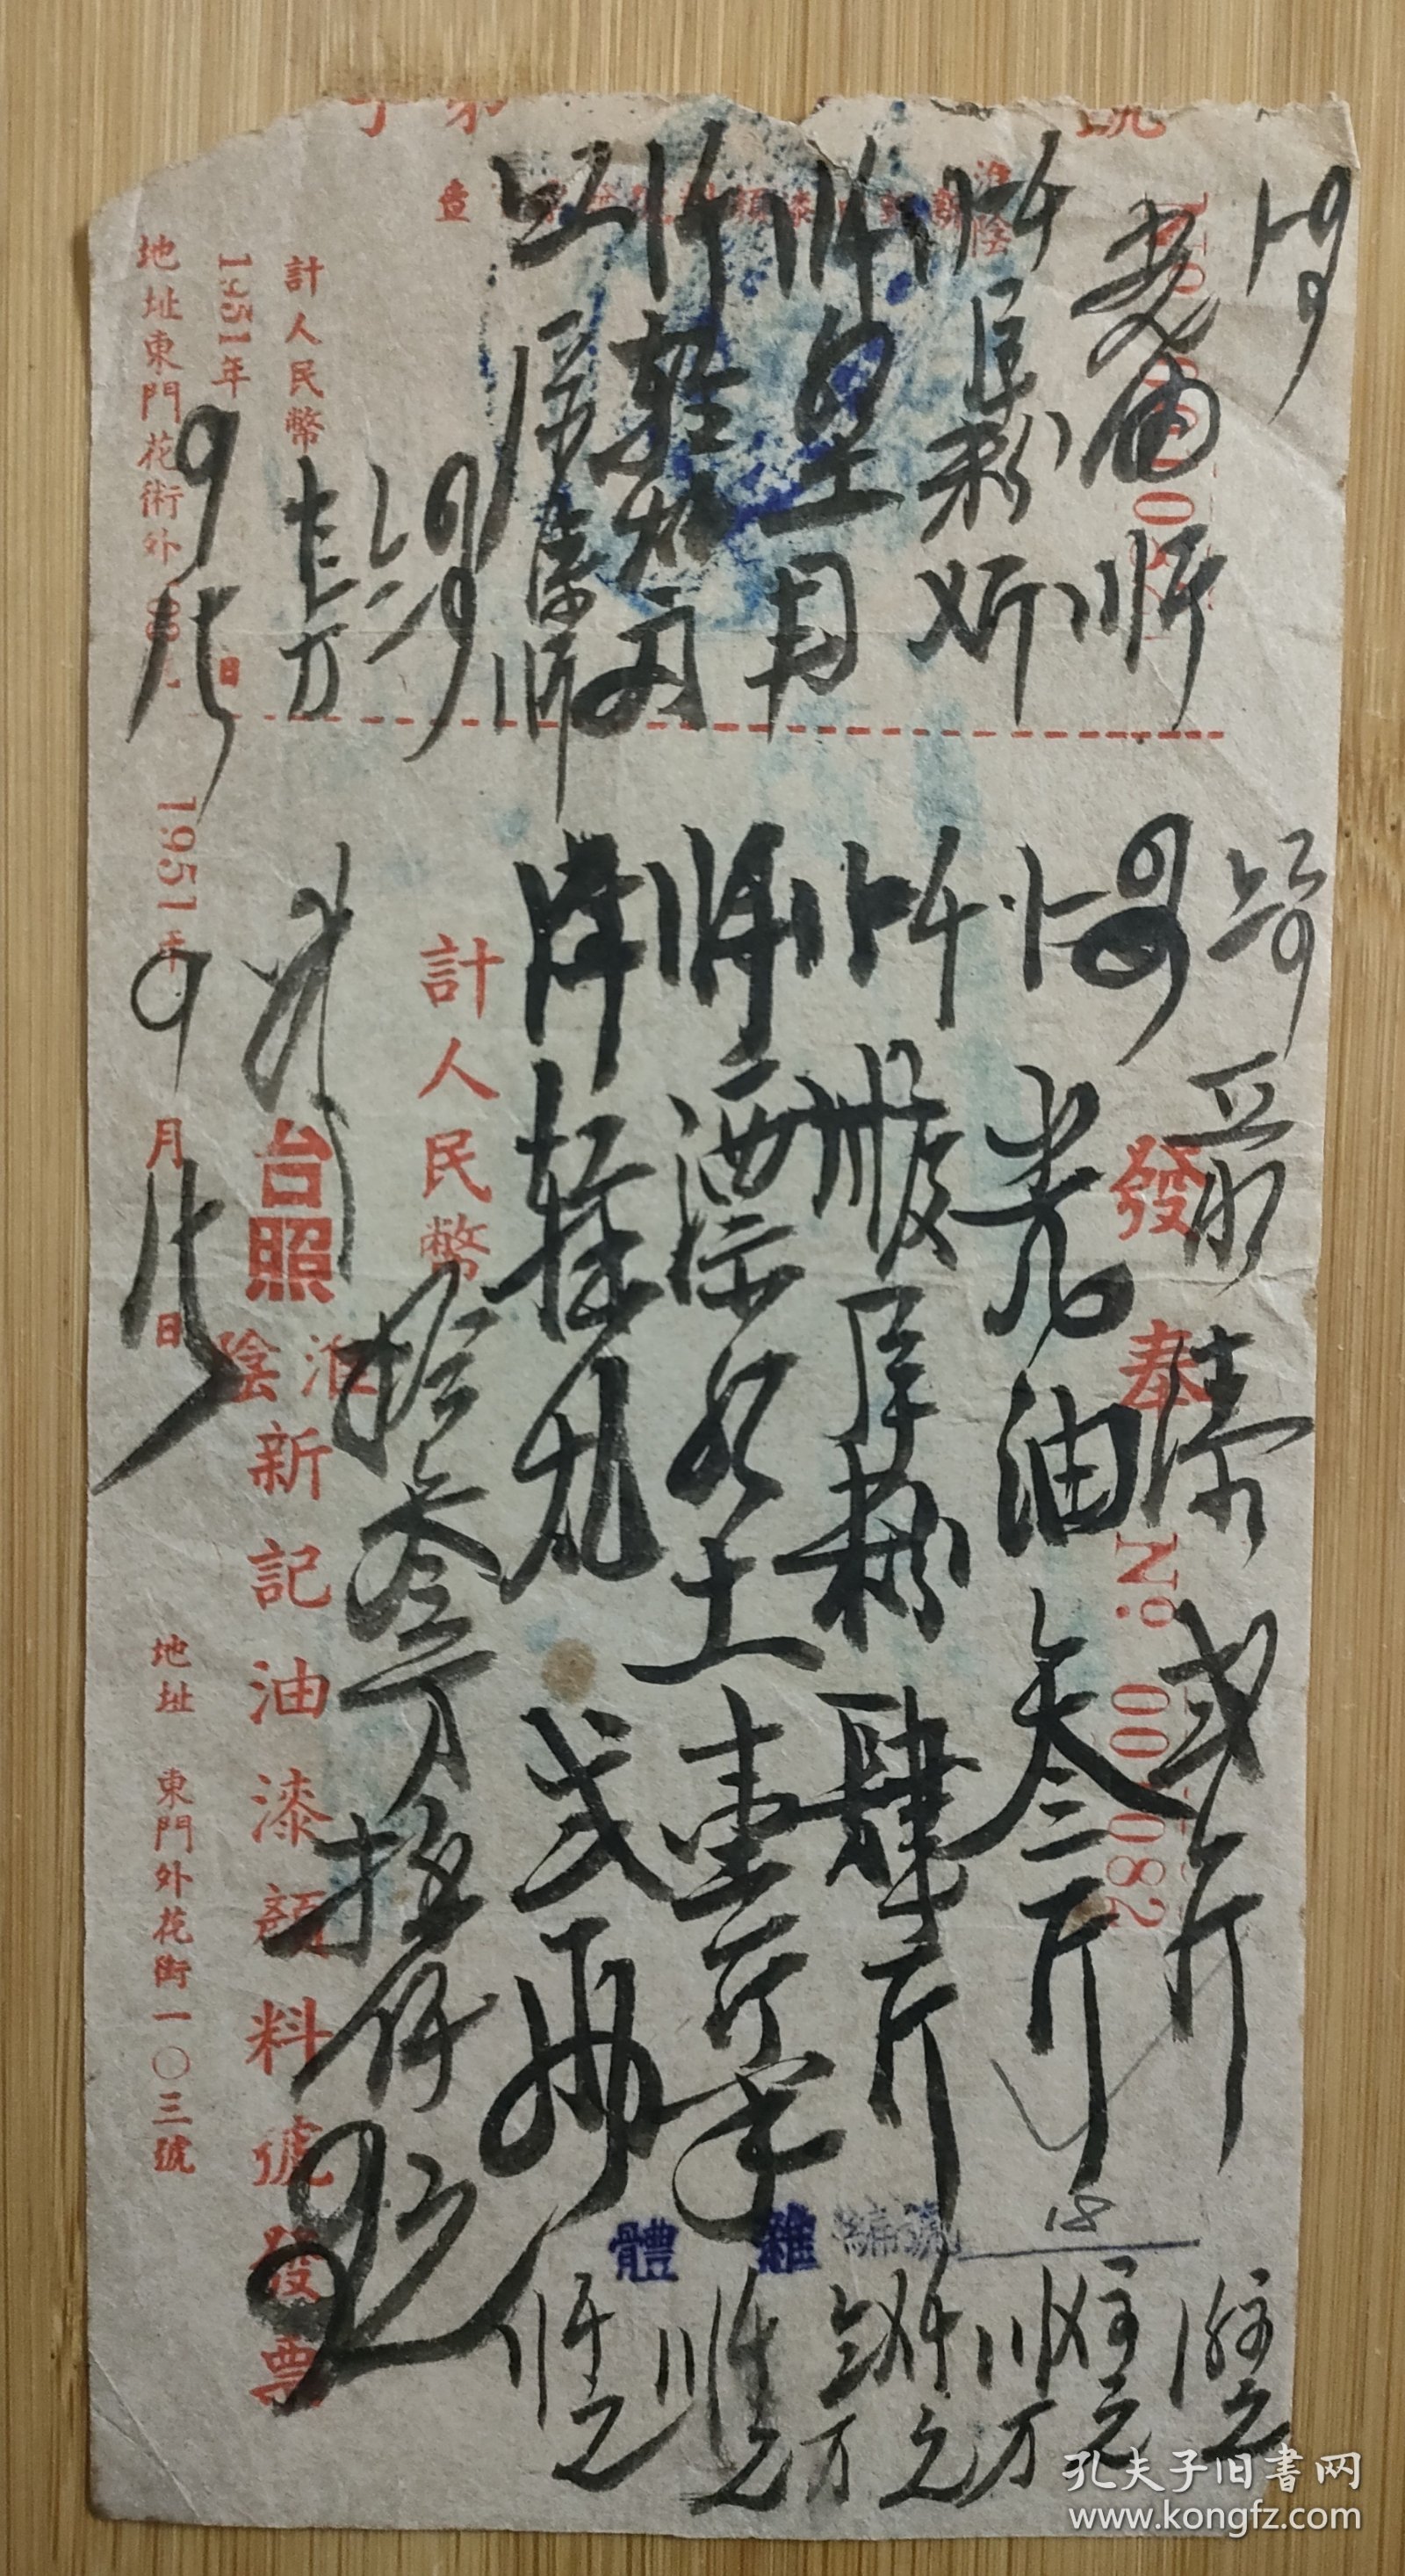 1951年江苏淮阴新记油漆颜料发票。地址，淮阴东门外花街103号